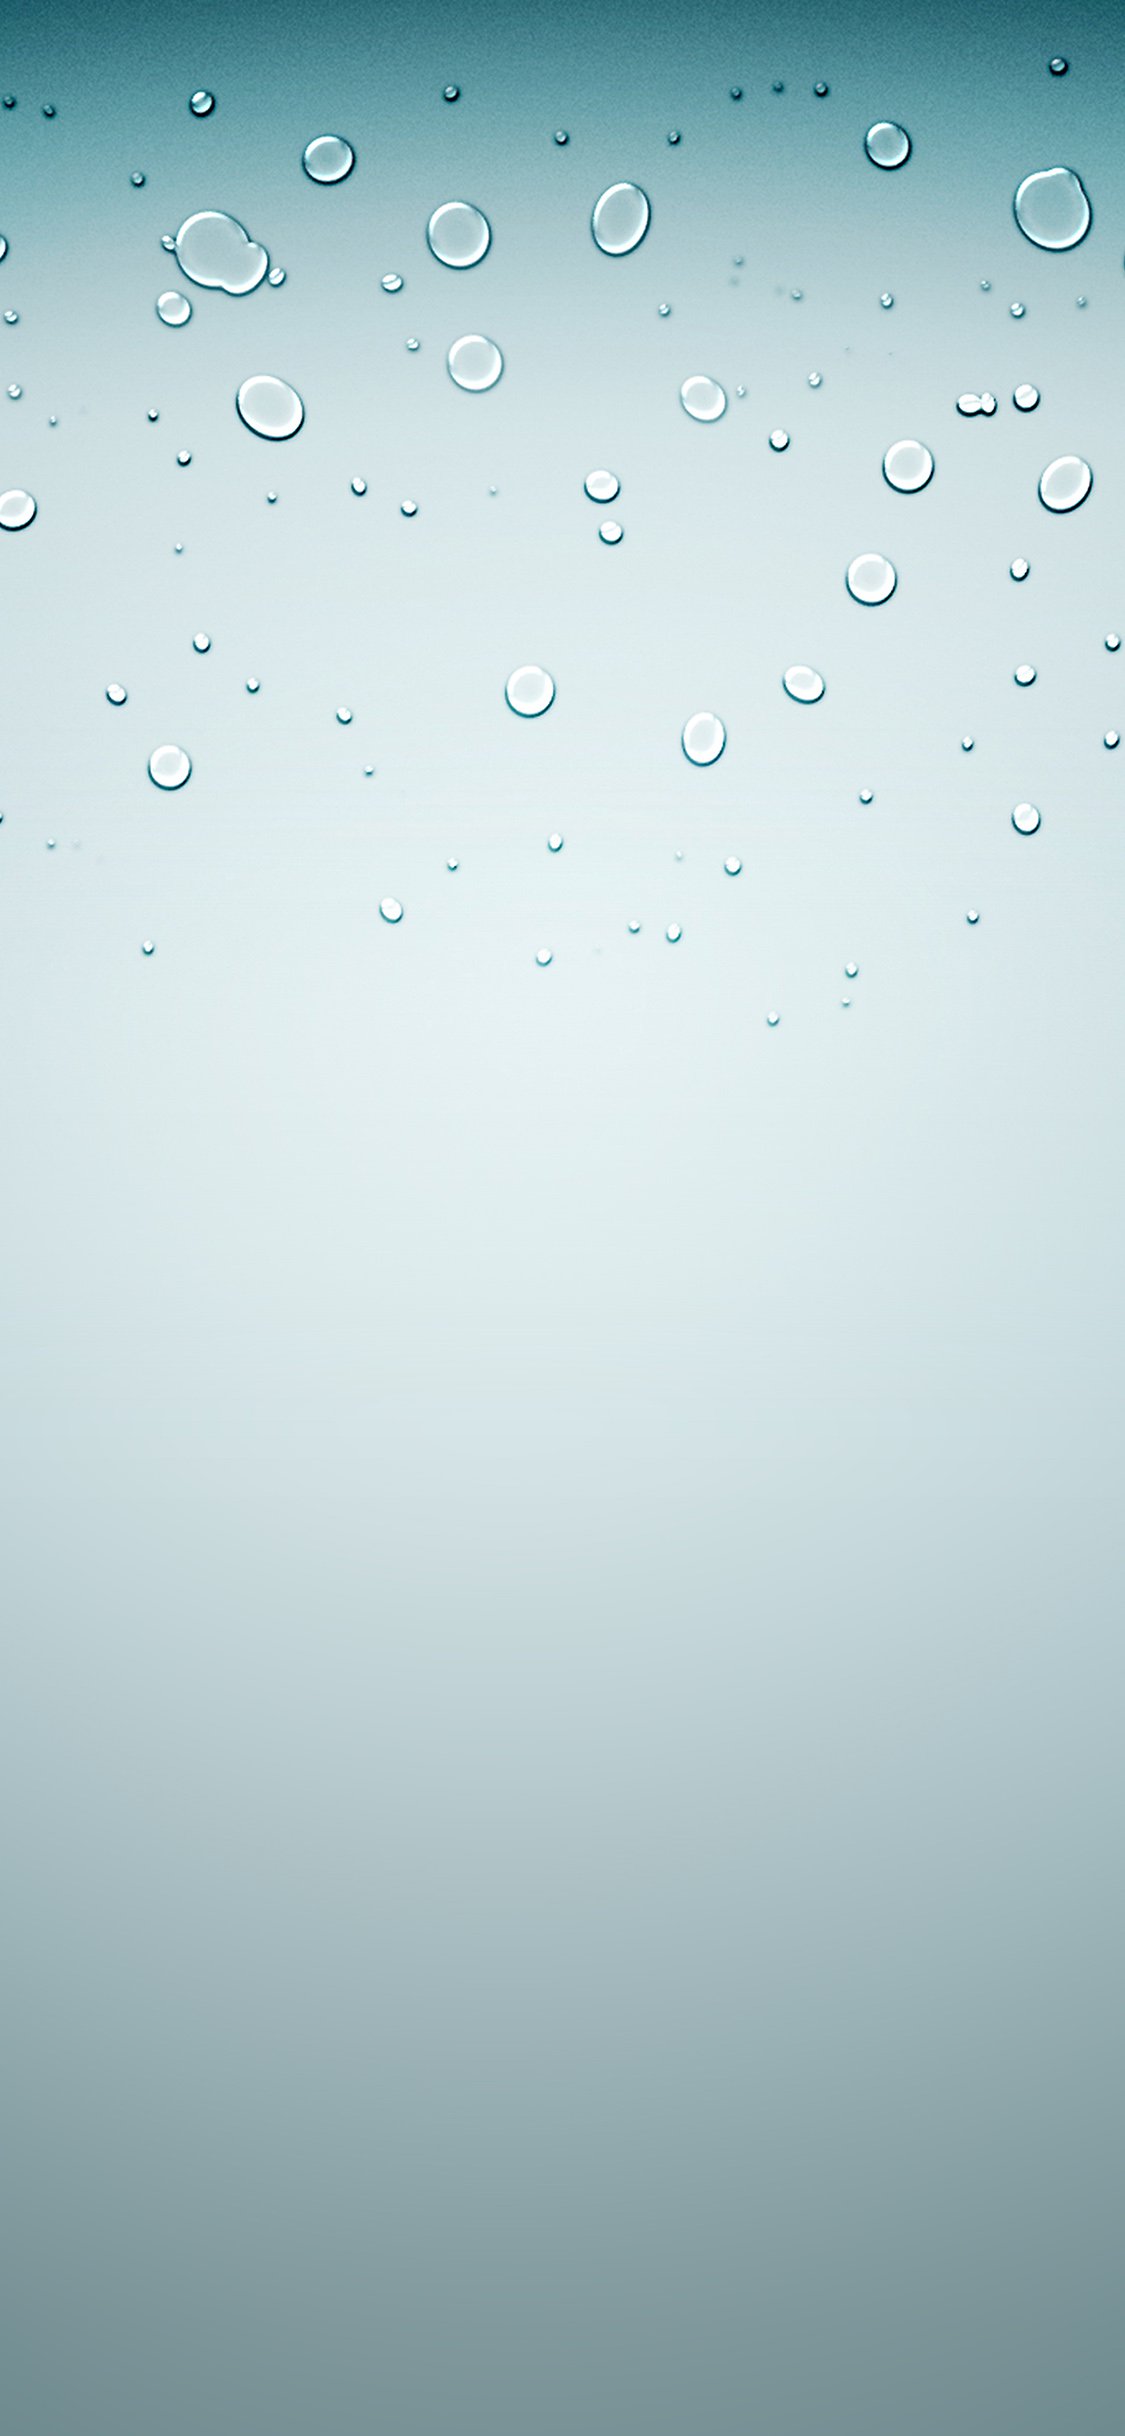 Iphone 桌布下載 精選 張水滴系列iphone 桌布 蘋果仁 你的科技媒體